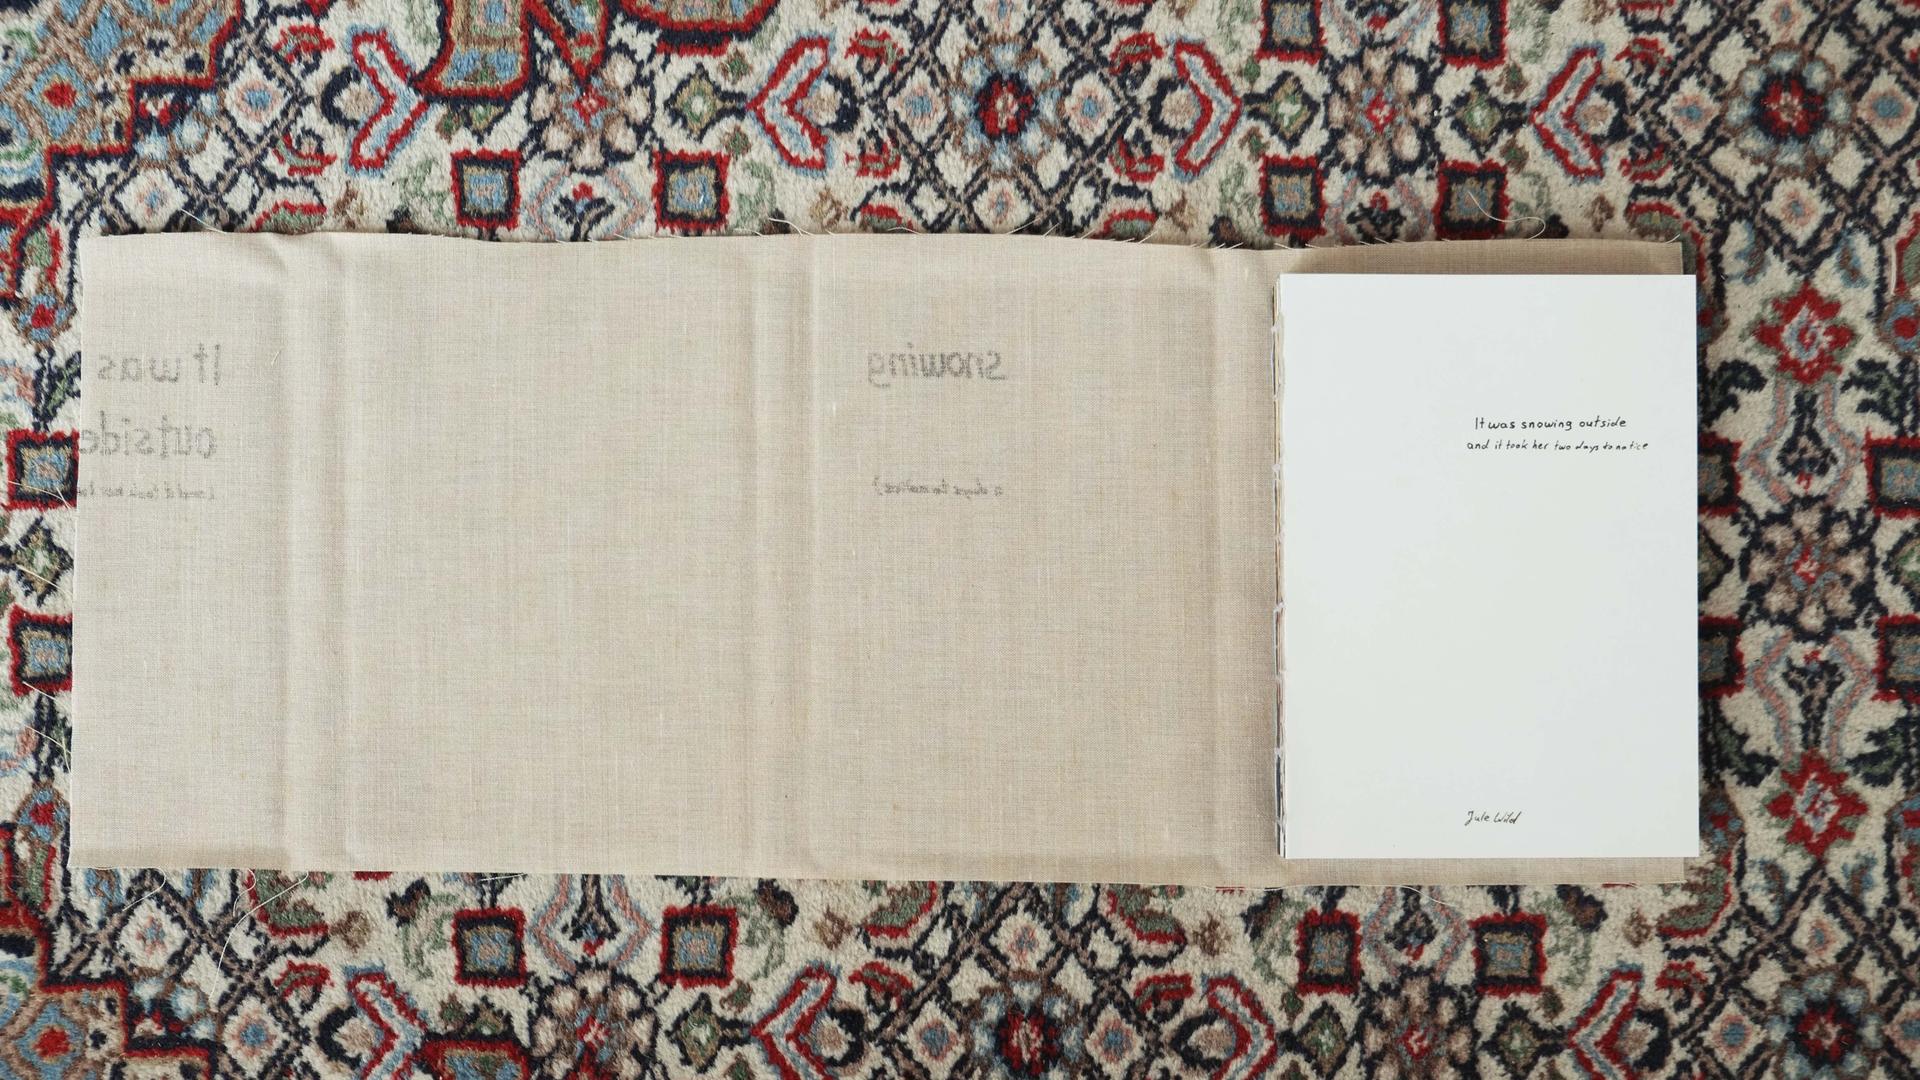 Das Buch liegt auf einem Teppich. Der Umschlag aus ausgefranstem Leinen ist vom gebundenen Buch abgelöst und liegt unter dem Buch auf dem Teppich.